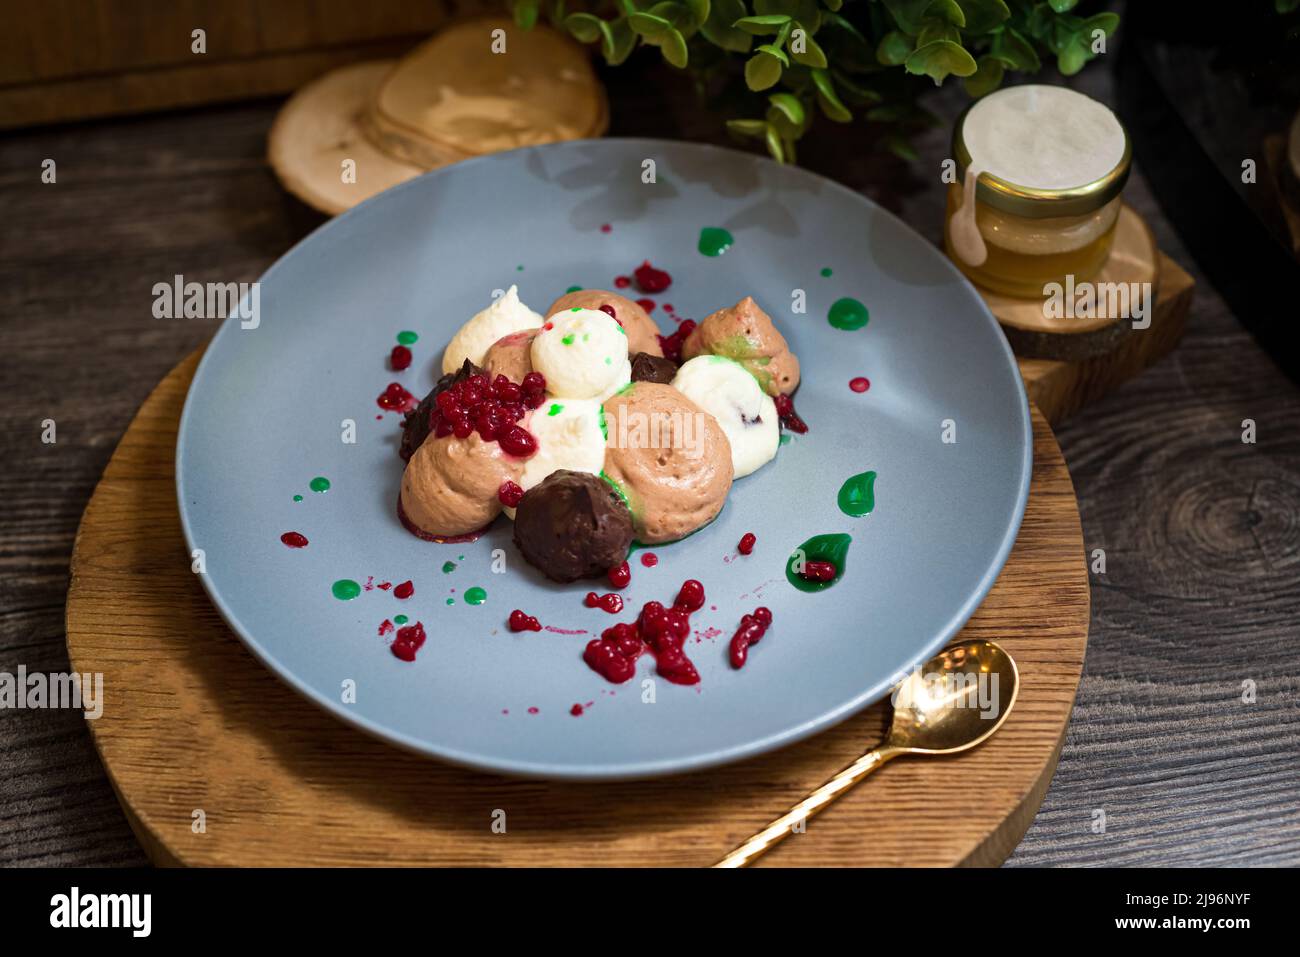 Tre mousse al cioccolato con caviale al lampone. Dessert su un piatto. Foto dark moody food. Foto Stock